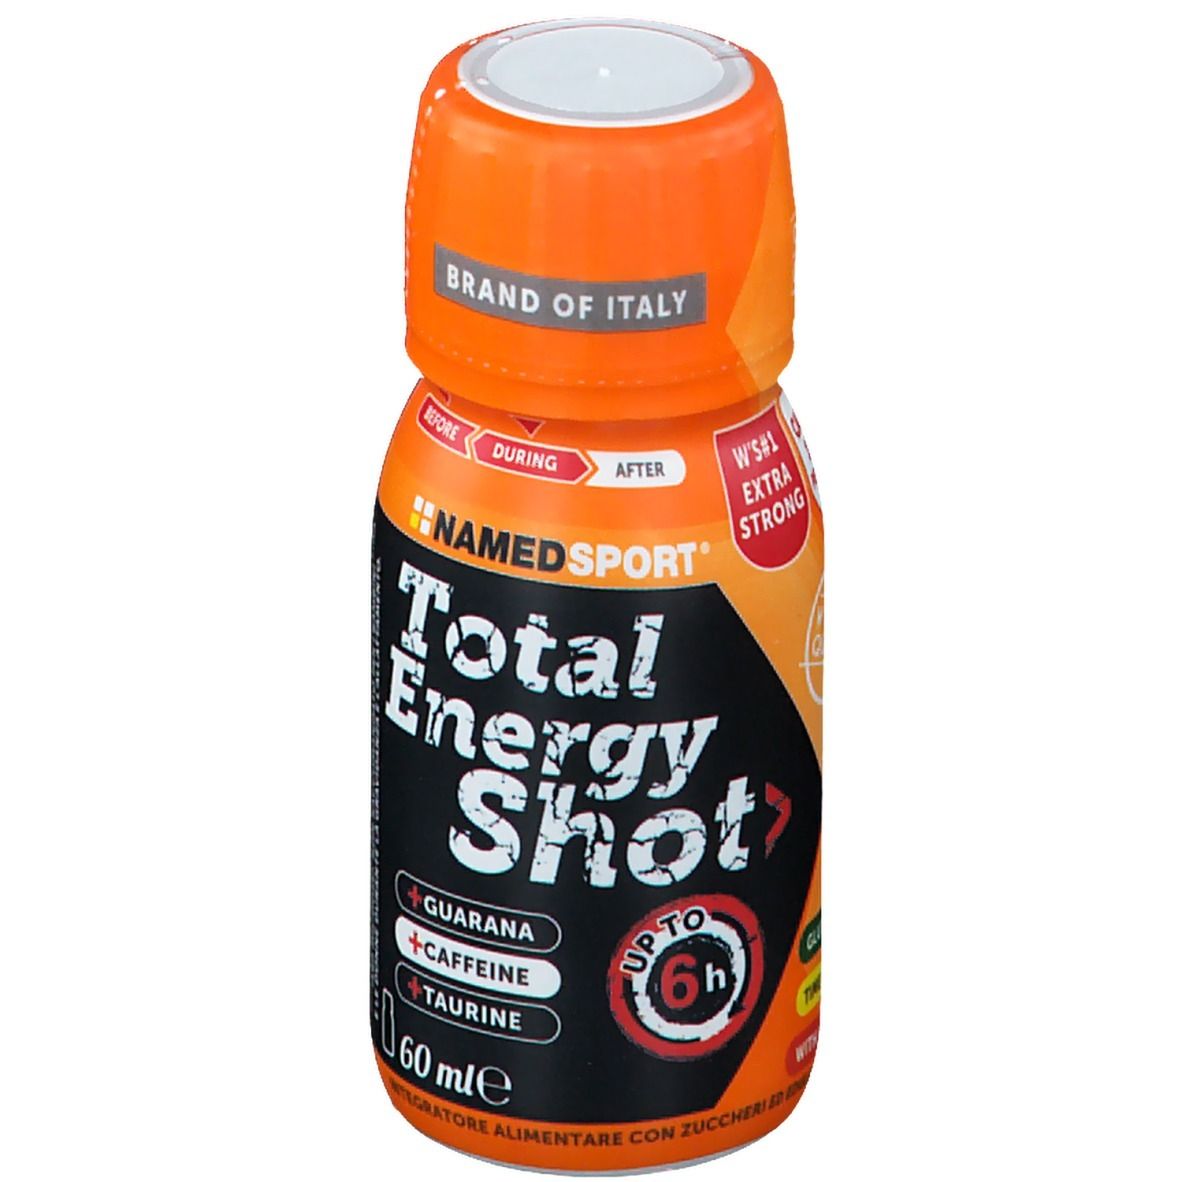 NAMEDSPORT® Total Energy Shot